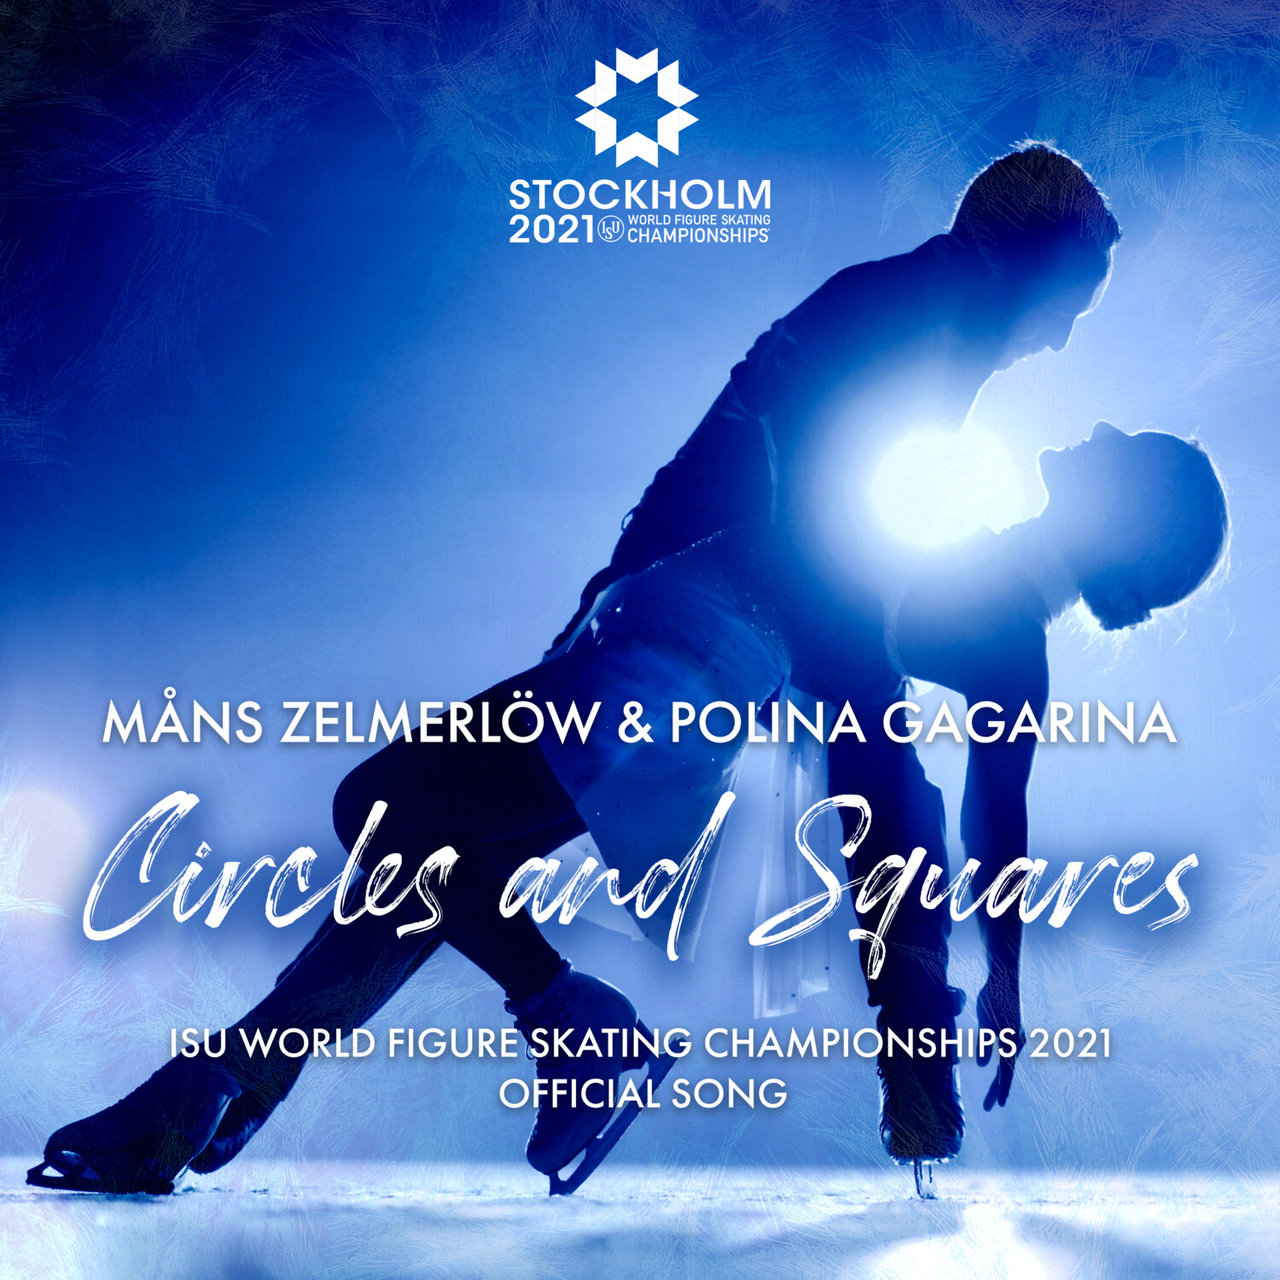 Måns Zelmerlöw & Polina Gagarina Circles and Squares cover artwork